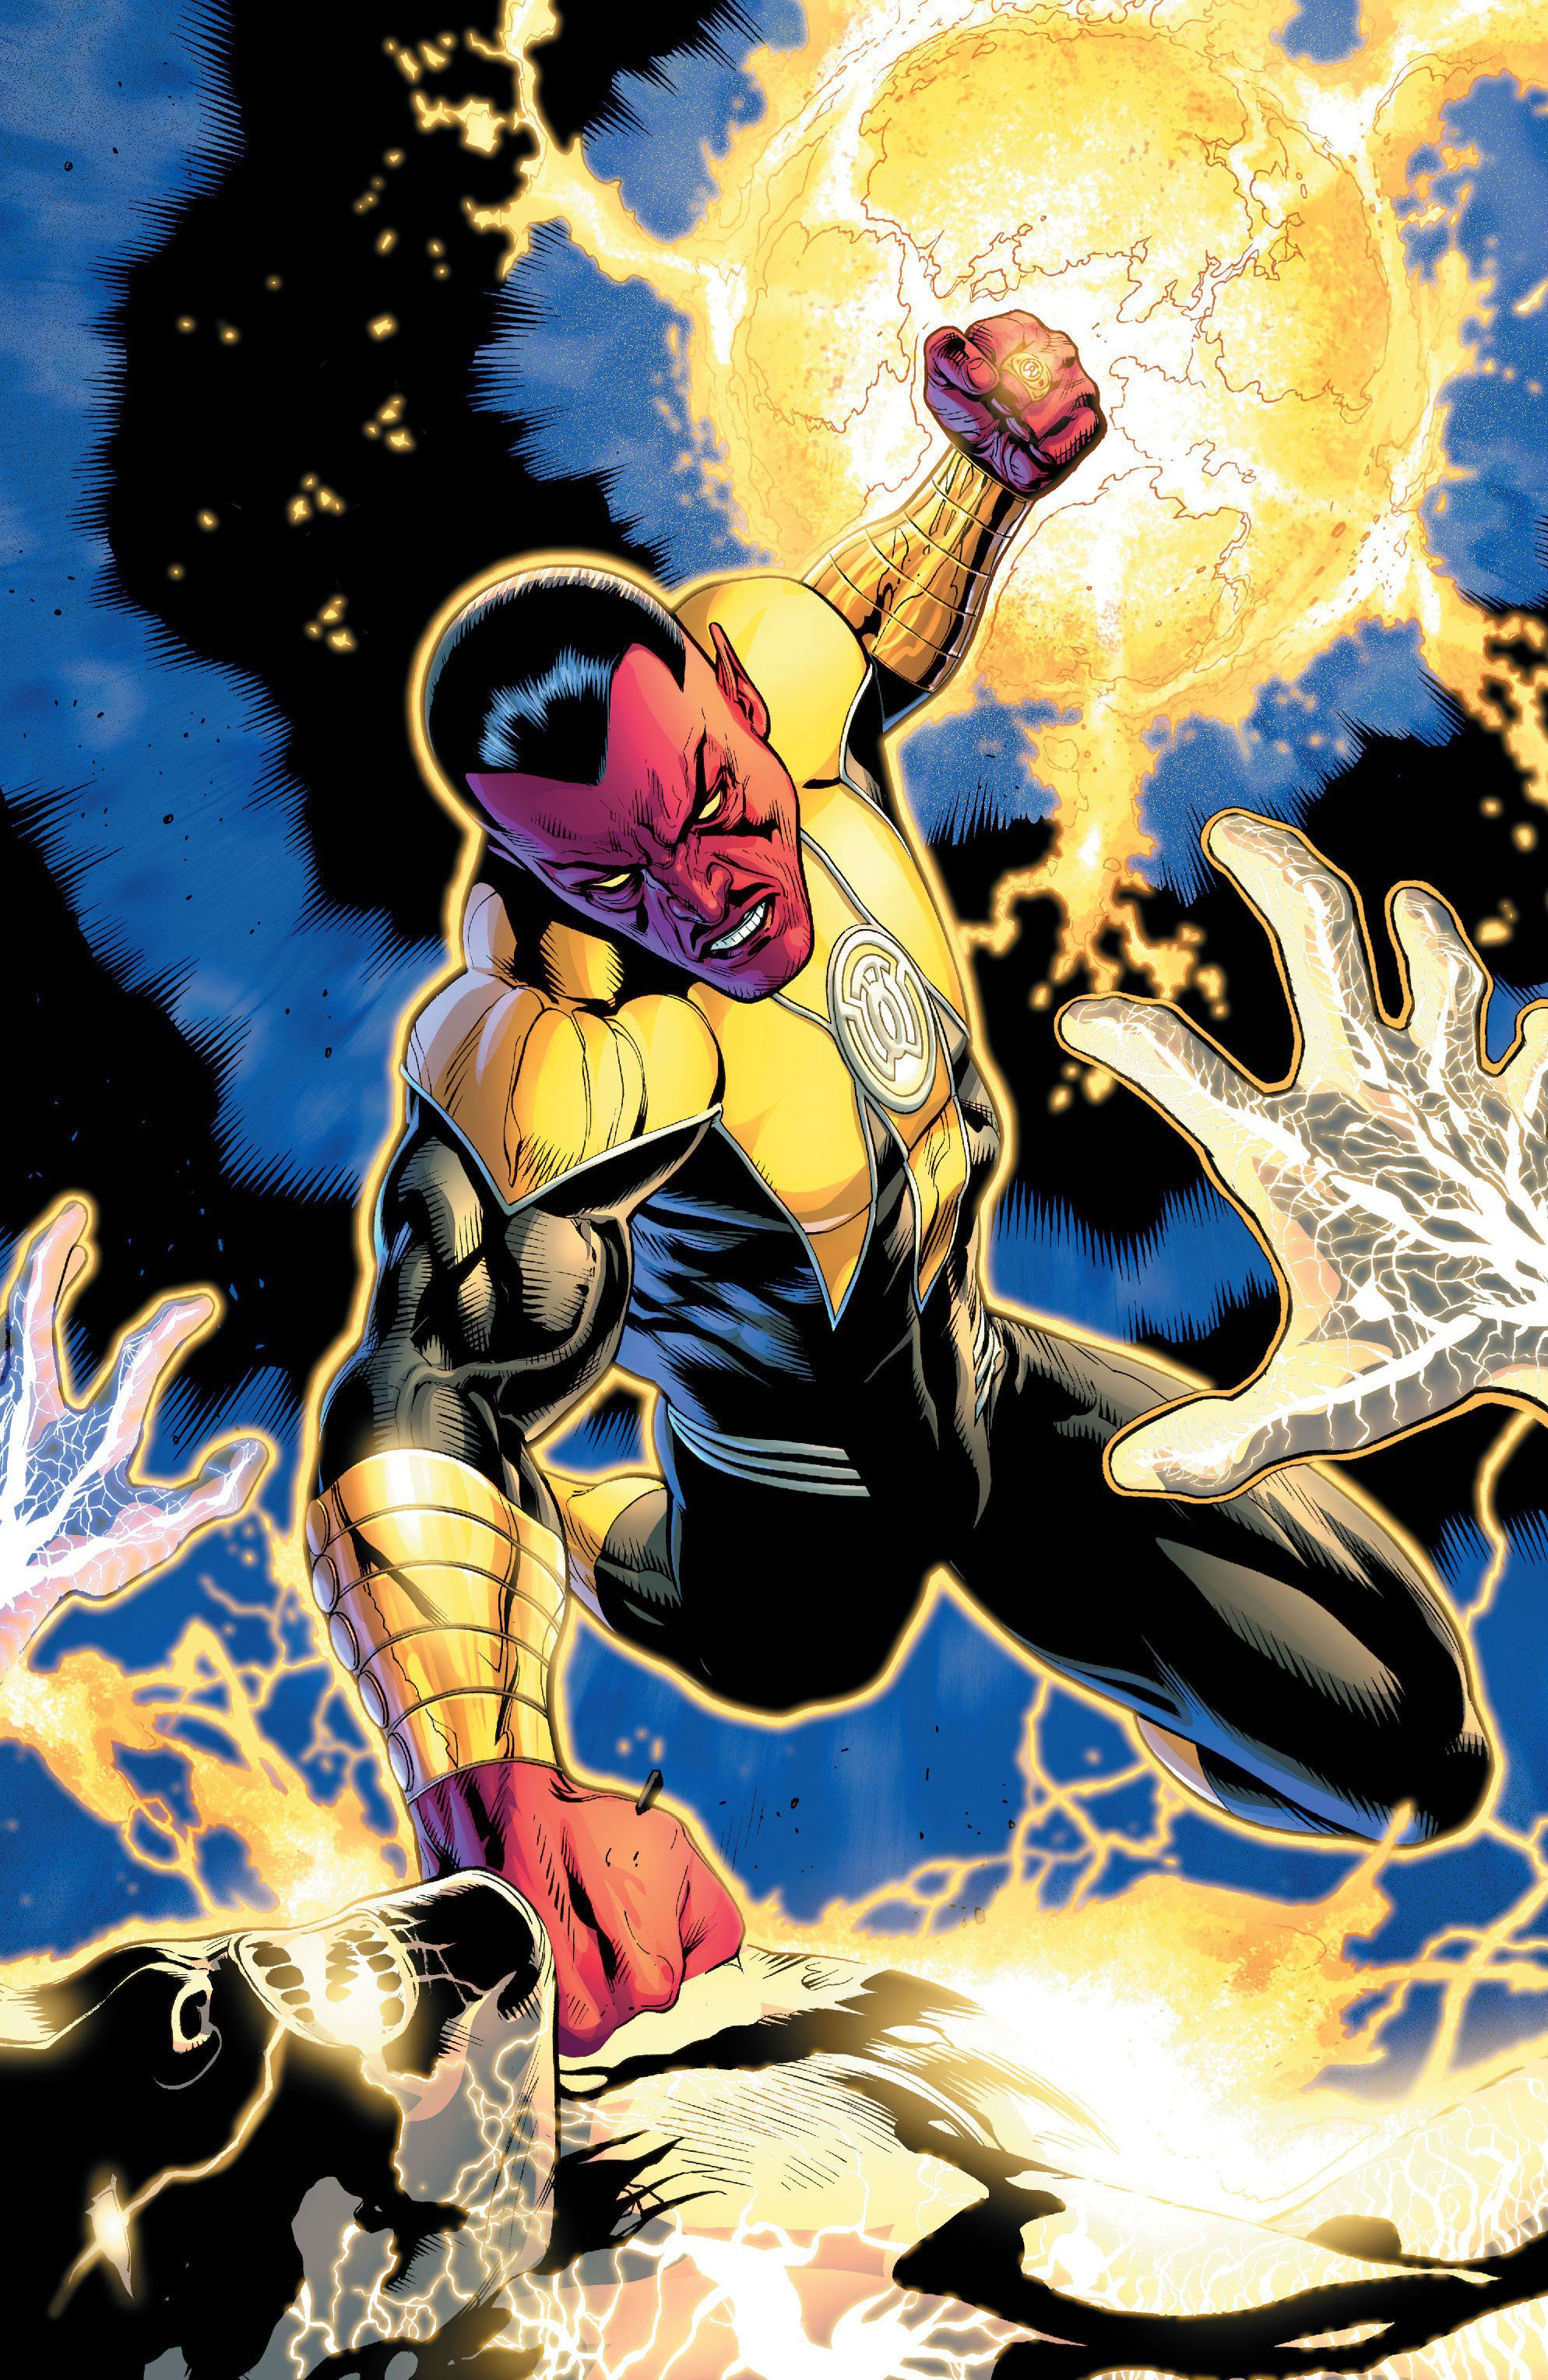 Sinestro vs Volthoom by Doug Mahnke. Green lantern villains